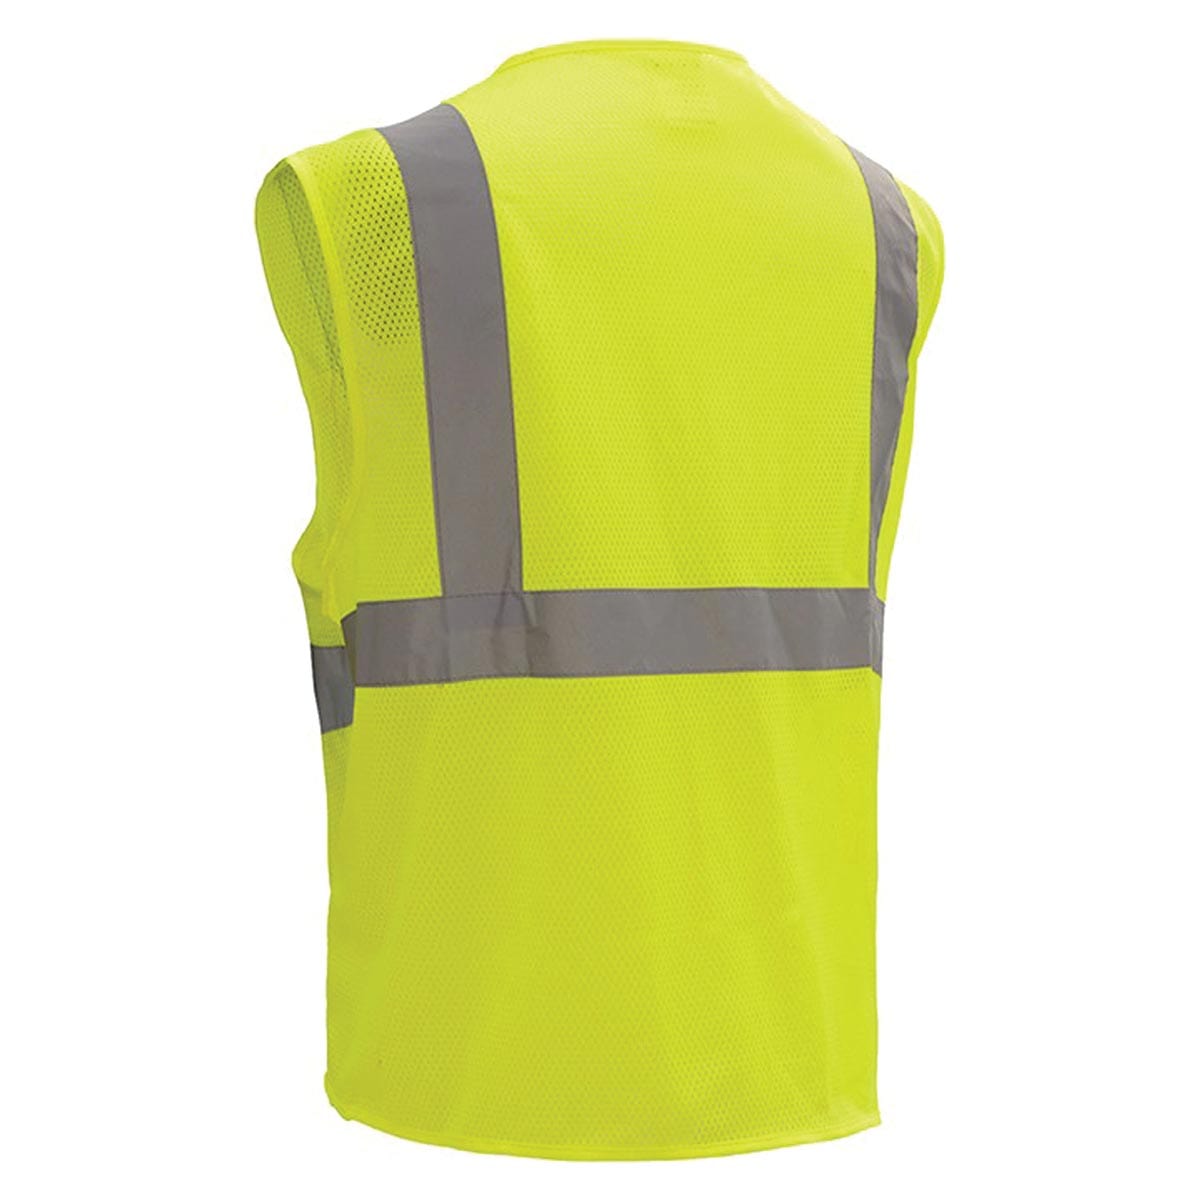 GSS Safety ANSI 2 Standard Mesh Zipper Hi-Vis Safety Vest